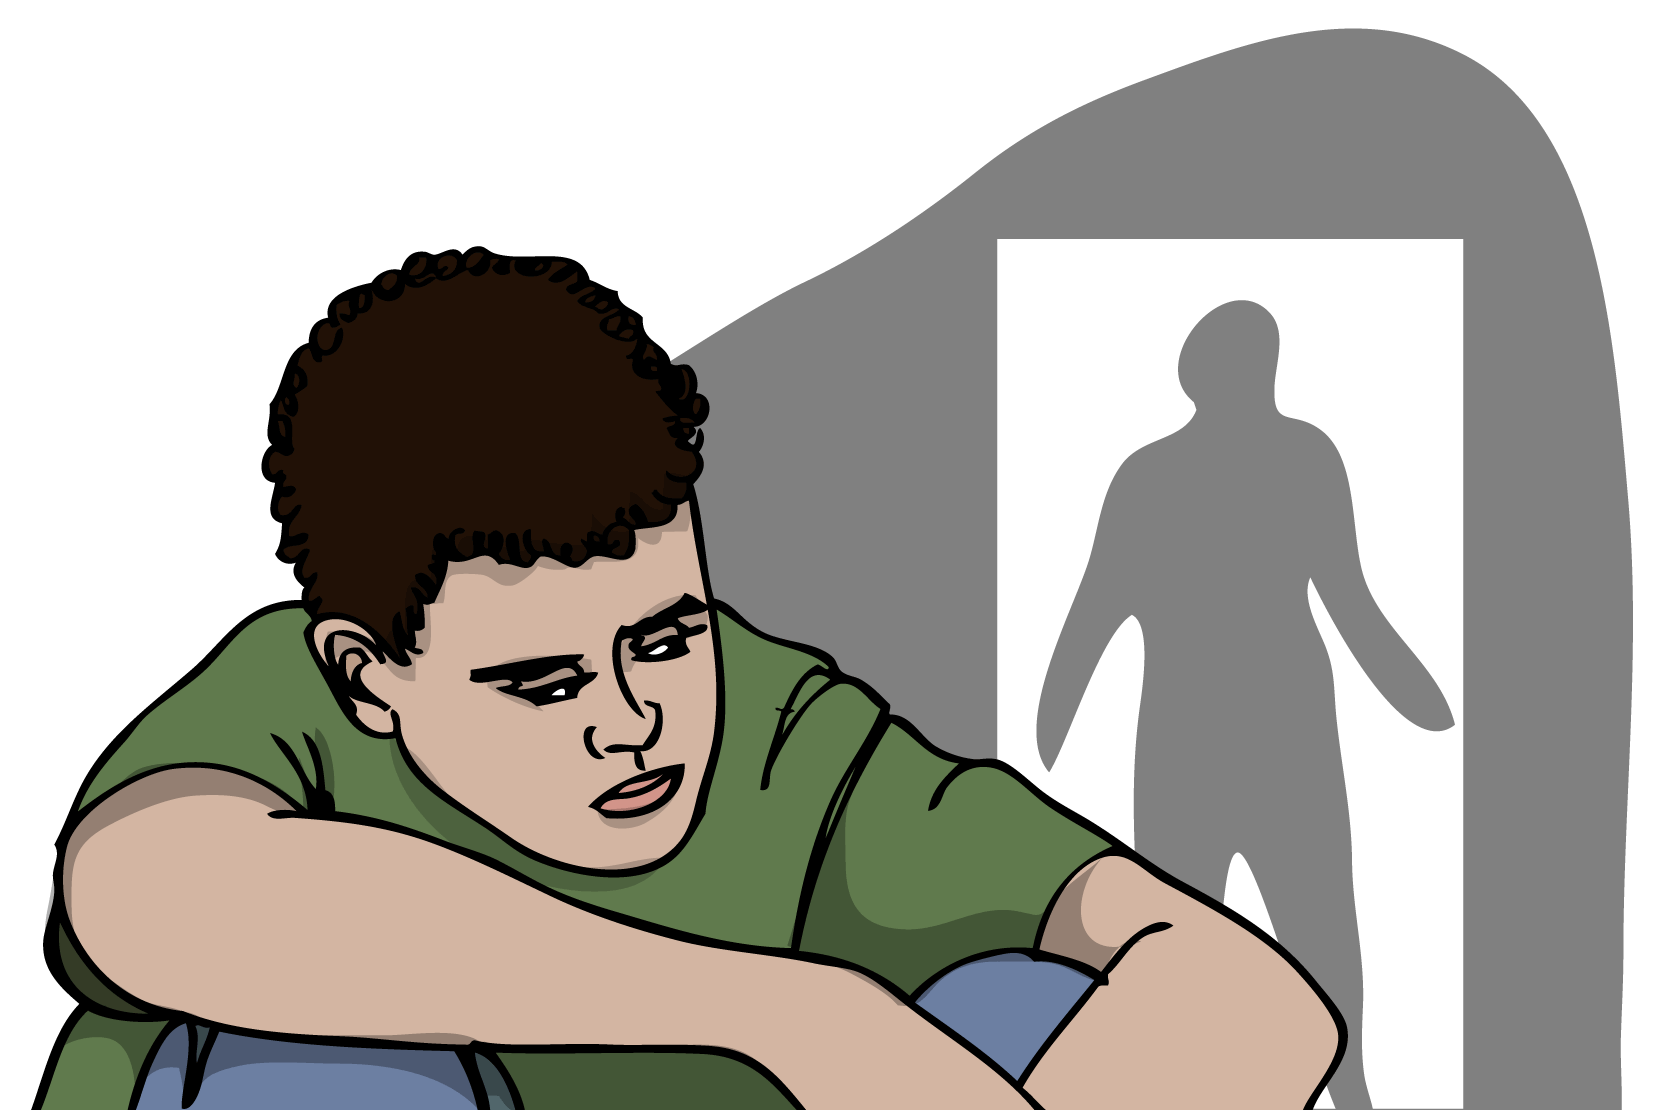 En ung person som sitter och sneglar bakåt. Bakom honom syns en siluett av en person i en dörröppning. Illustration.